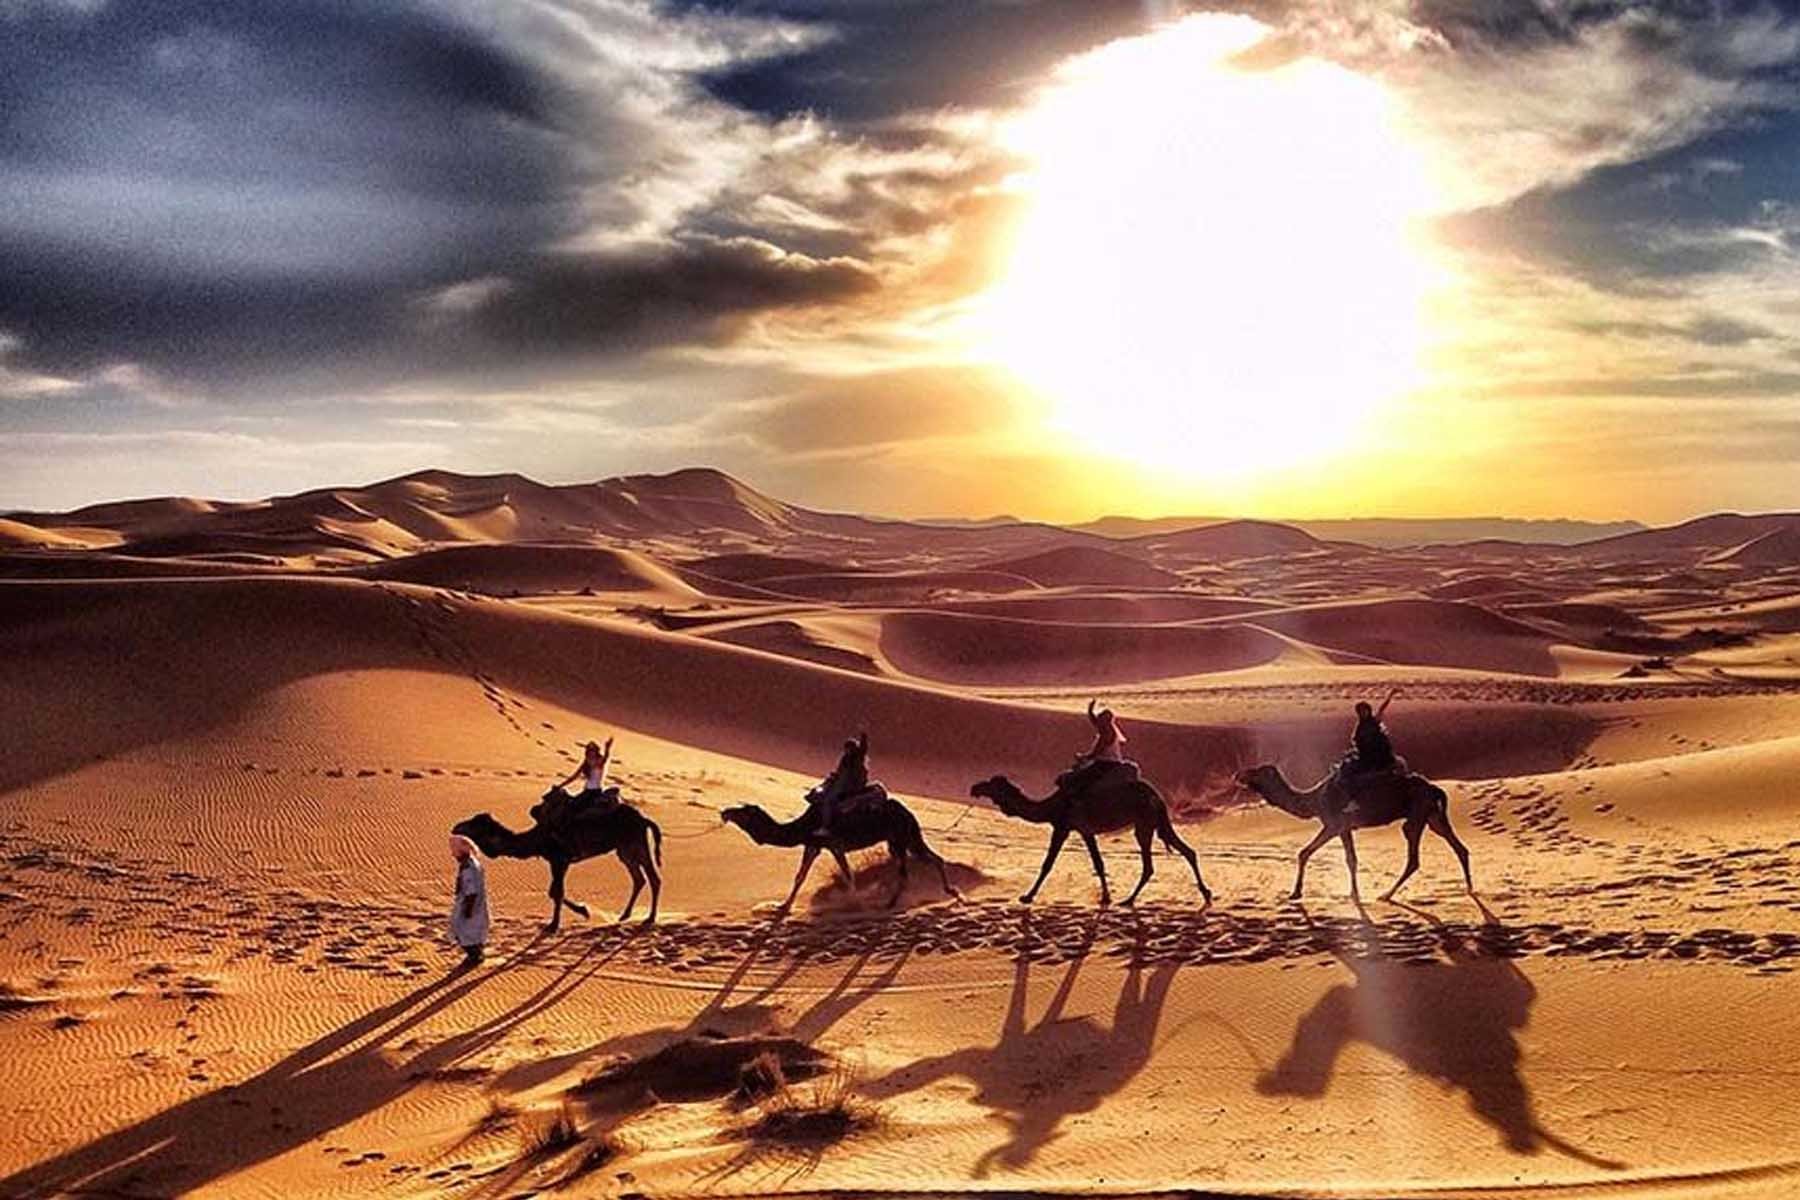 Рисунок караван верблюдов в пустыне